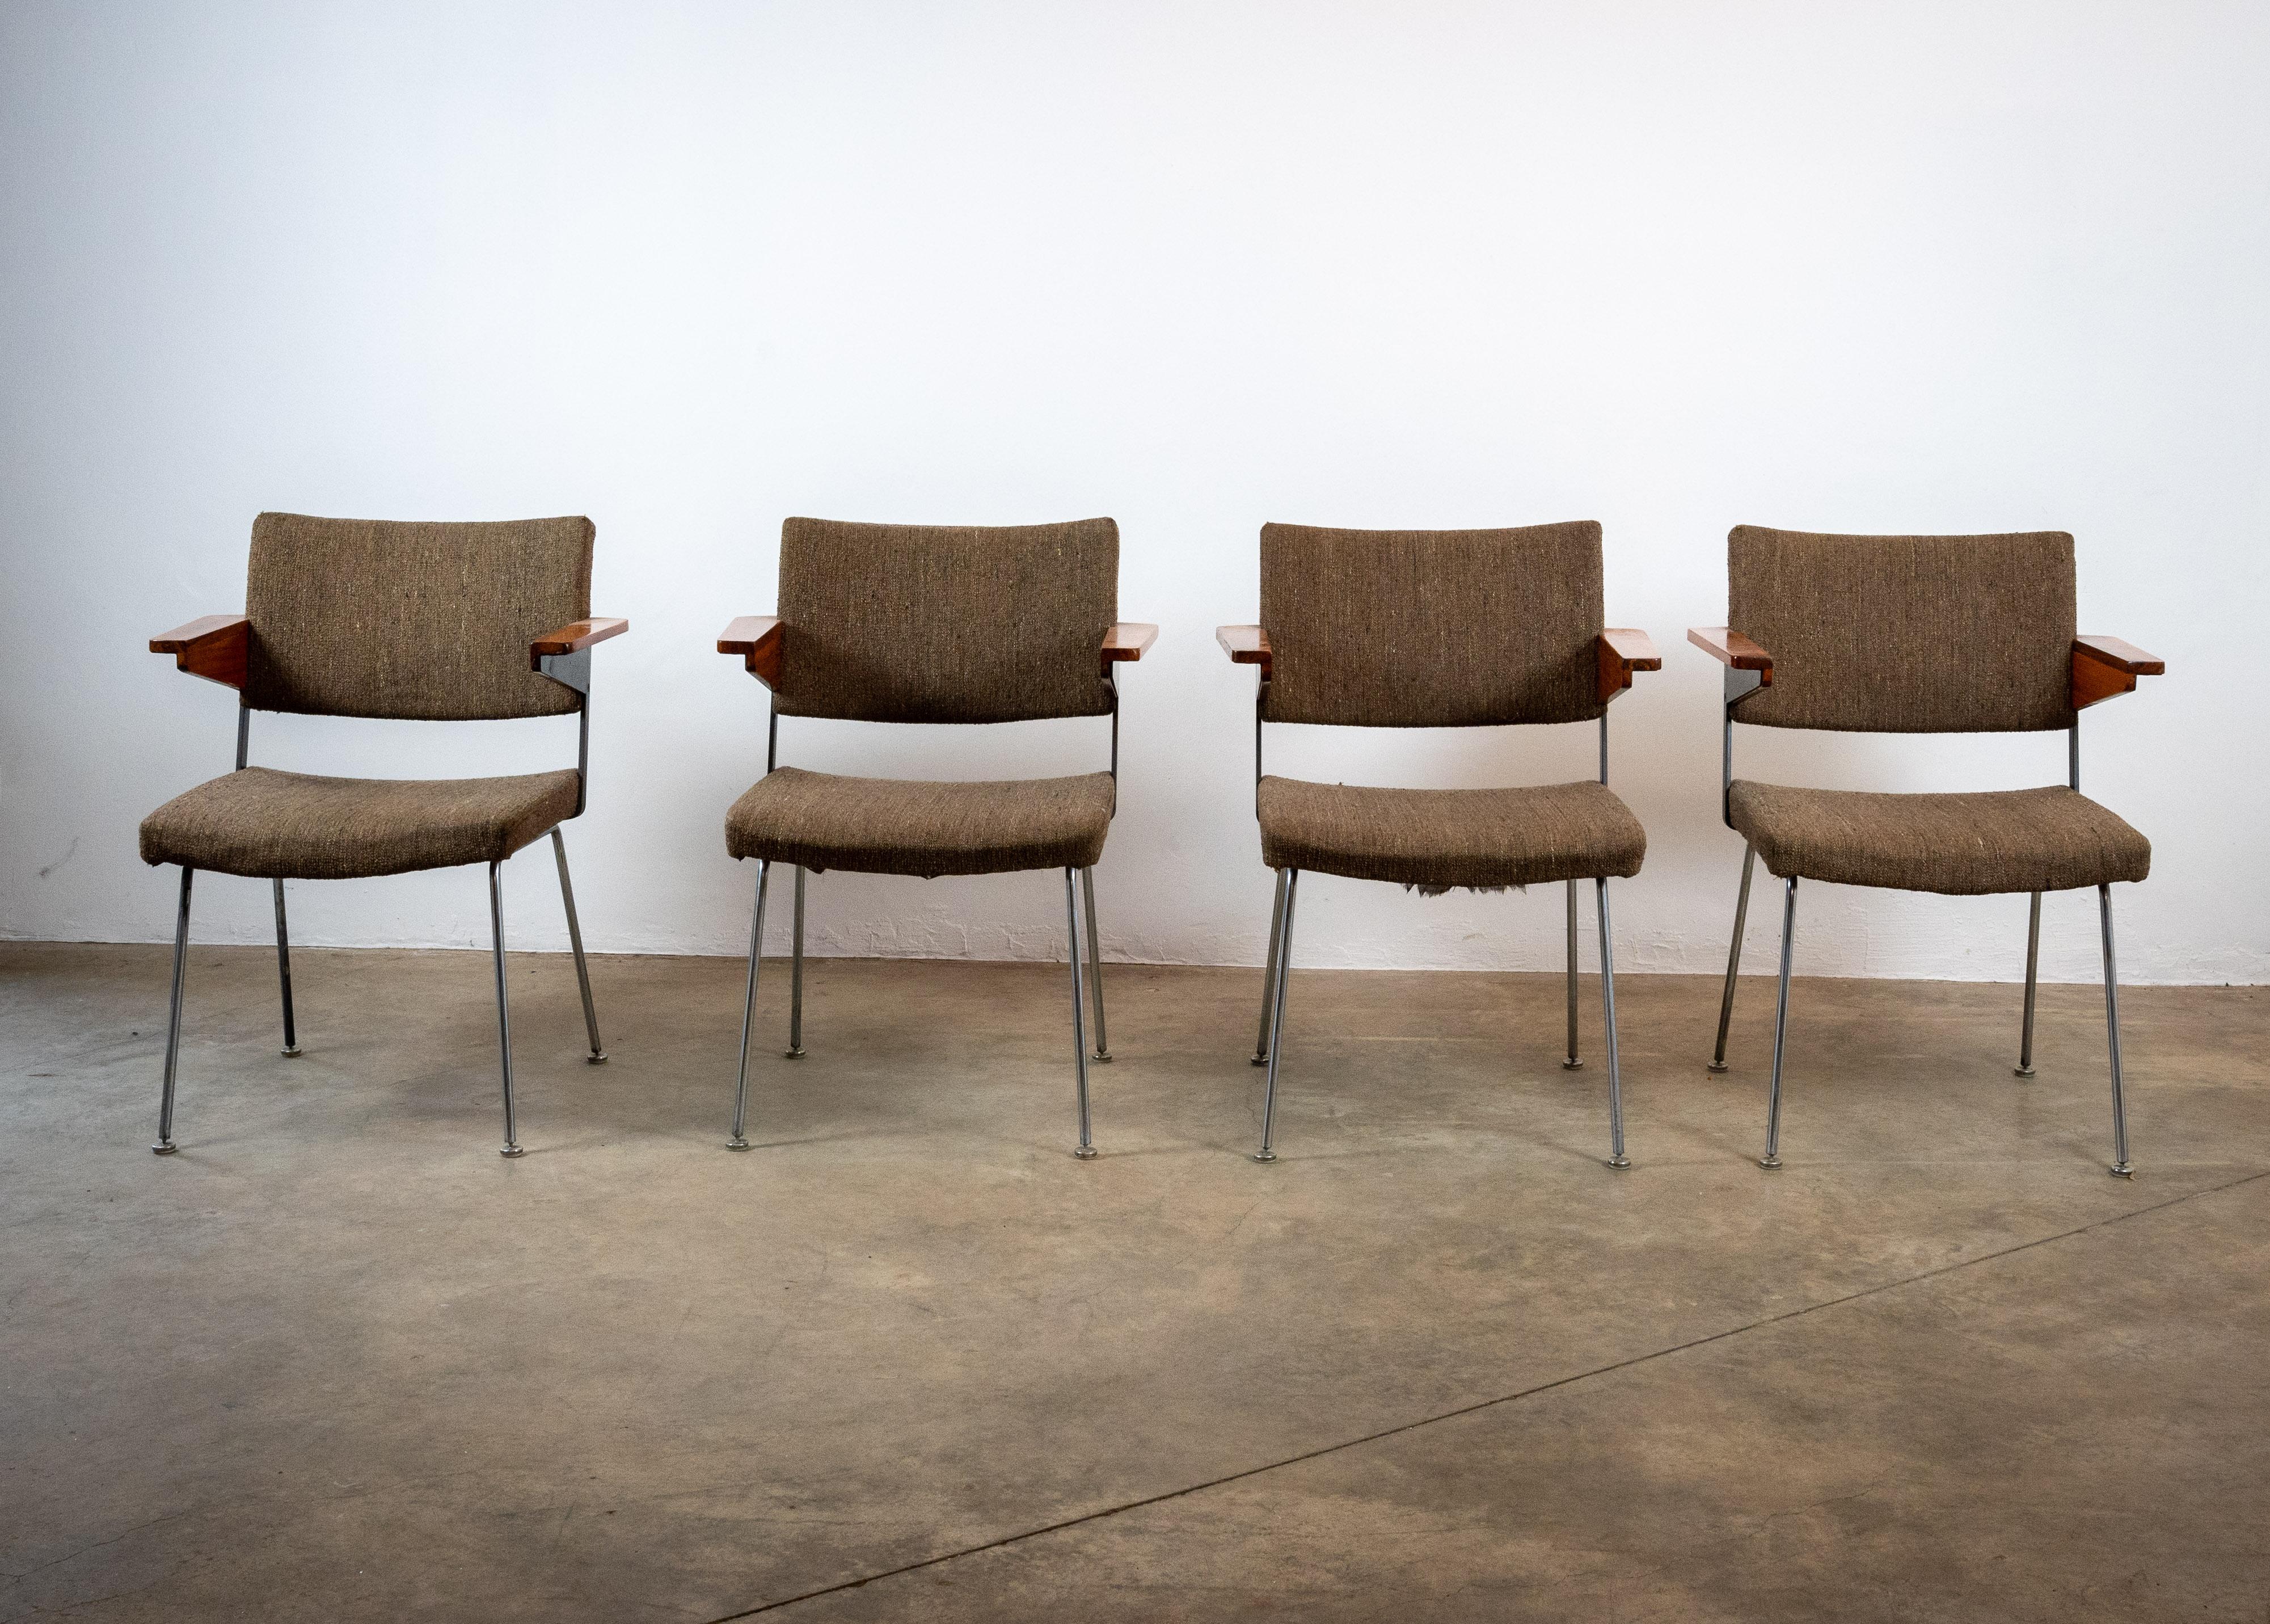 Presentamos un conjunto de 8 exquisitas sillas Gispen nº 11, disponibles para su compra como conjunto de 4 u 8. Estas maravillas de mediados de siglo, diseñadas por A.R. Cordemeyer, destilan elegancia atemporal. Distinguidas por sus reposabrazos de